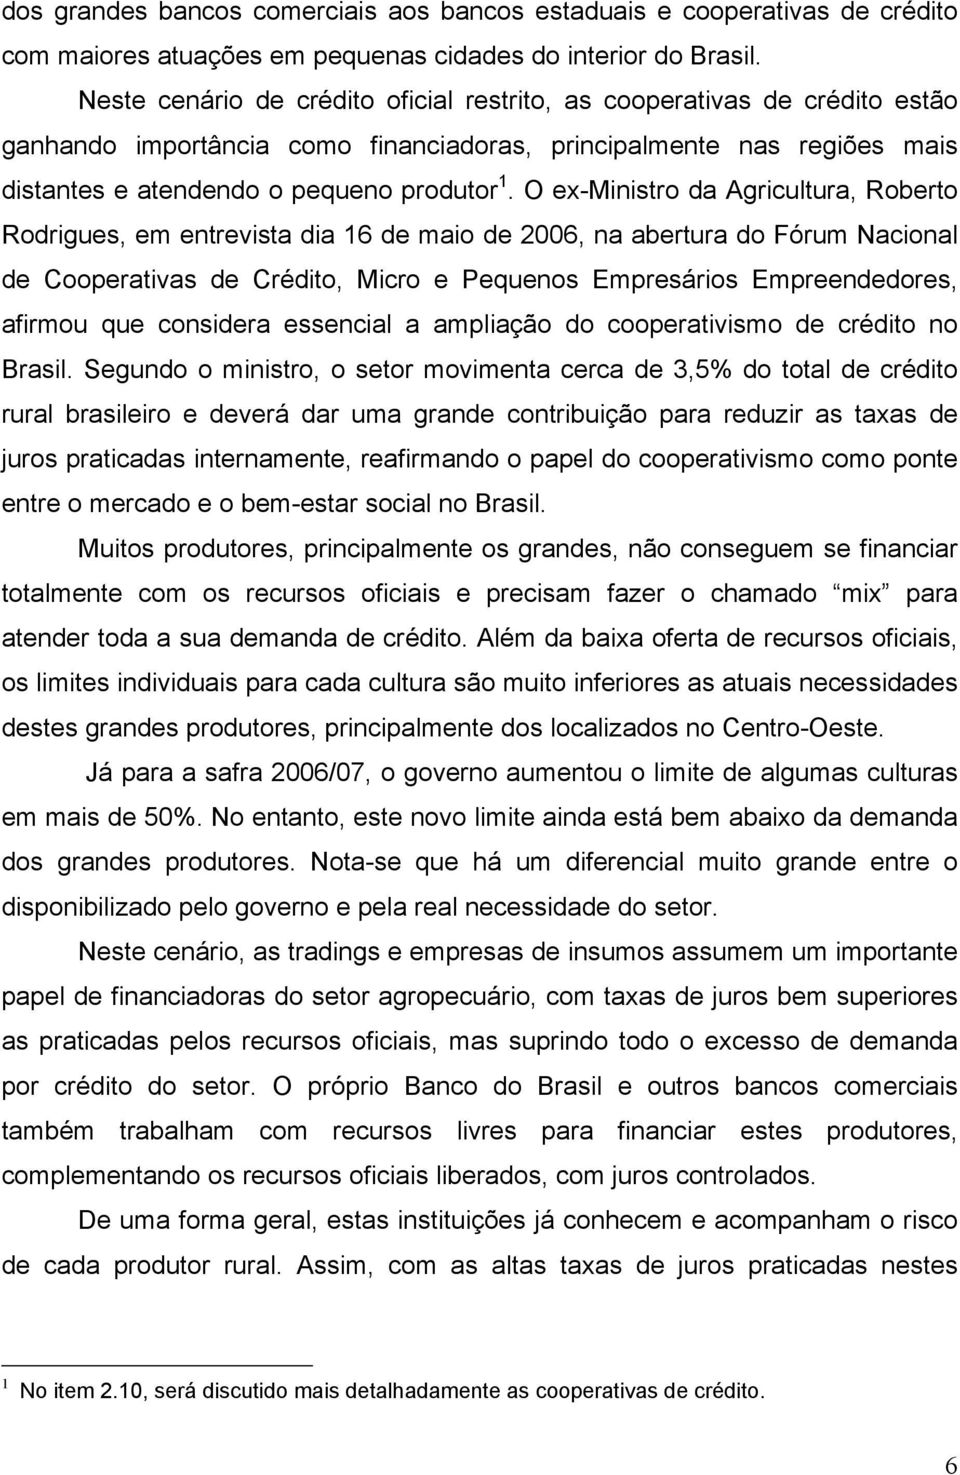 O ex-ministro da Agricultura, Roberto Rodrigues, em entrevista dia 16 de maio de 2006, na abertura do Fórum Nacional de Cooperativas de Crédito, Micro e Pequenos Empresários Empreendedores, afirmou